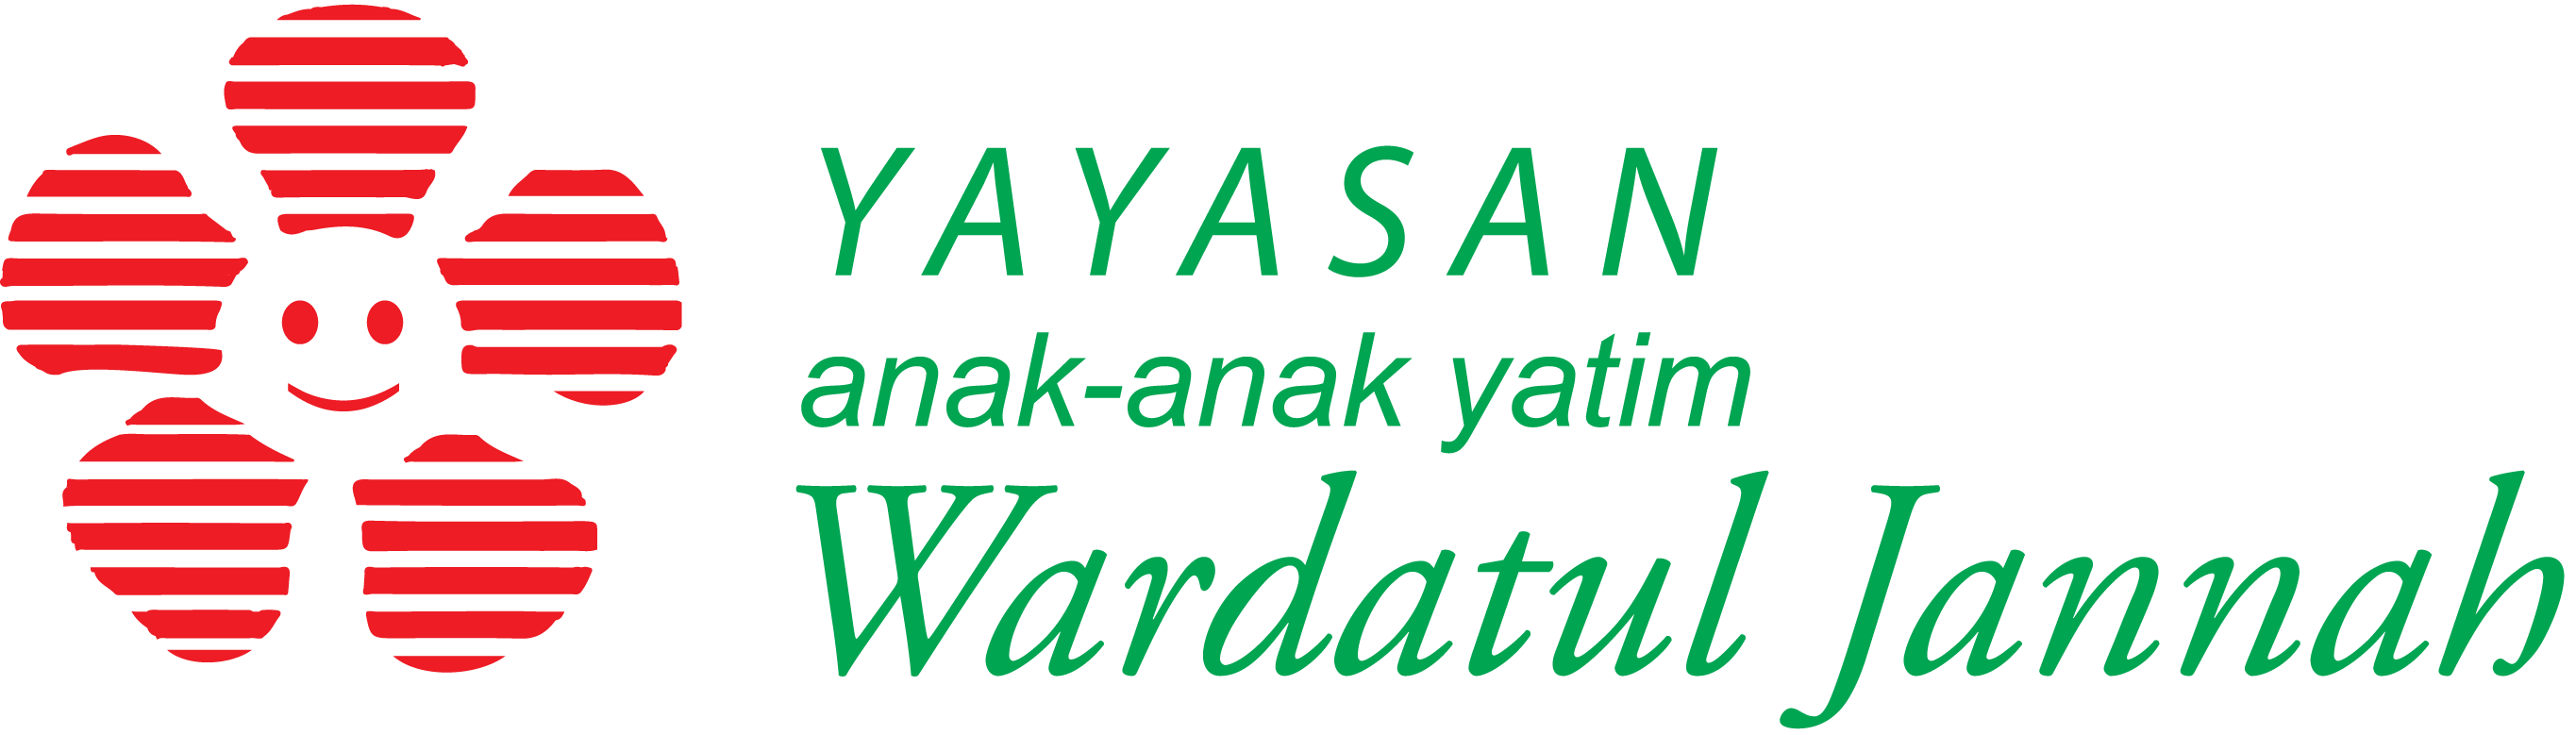 Yayasan Wardatul Jannah